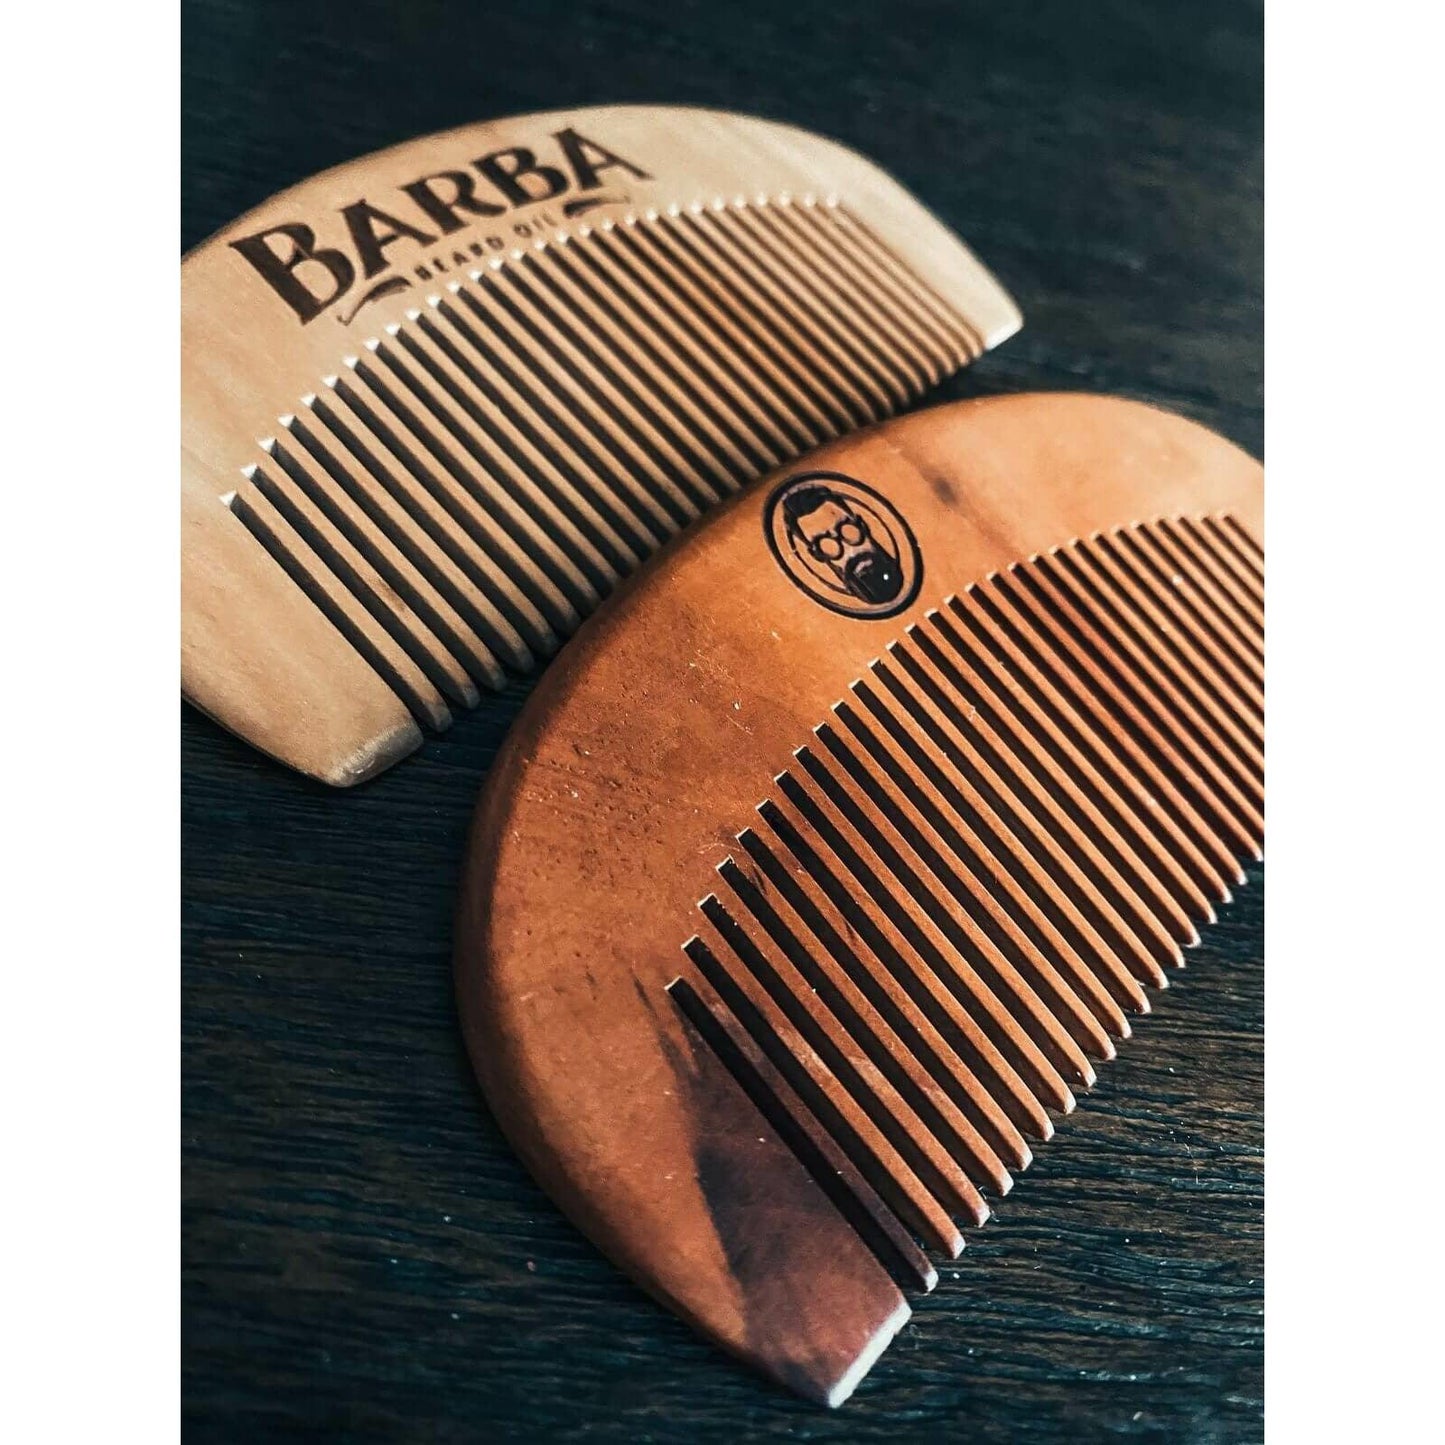 Wooden Beard Comb - Barba Beard Company